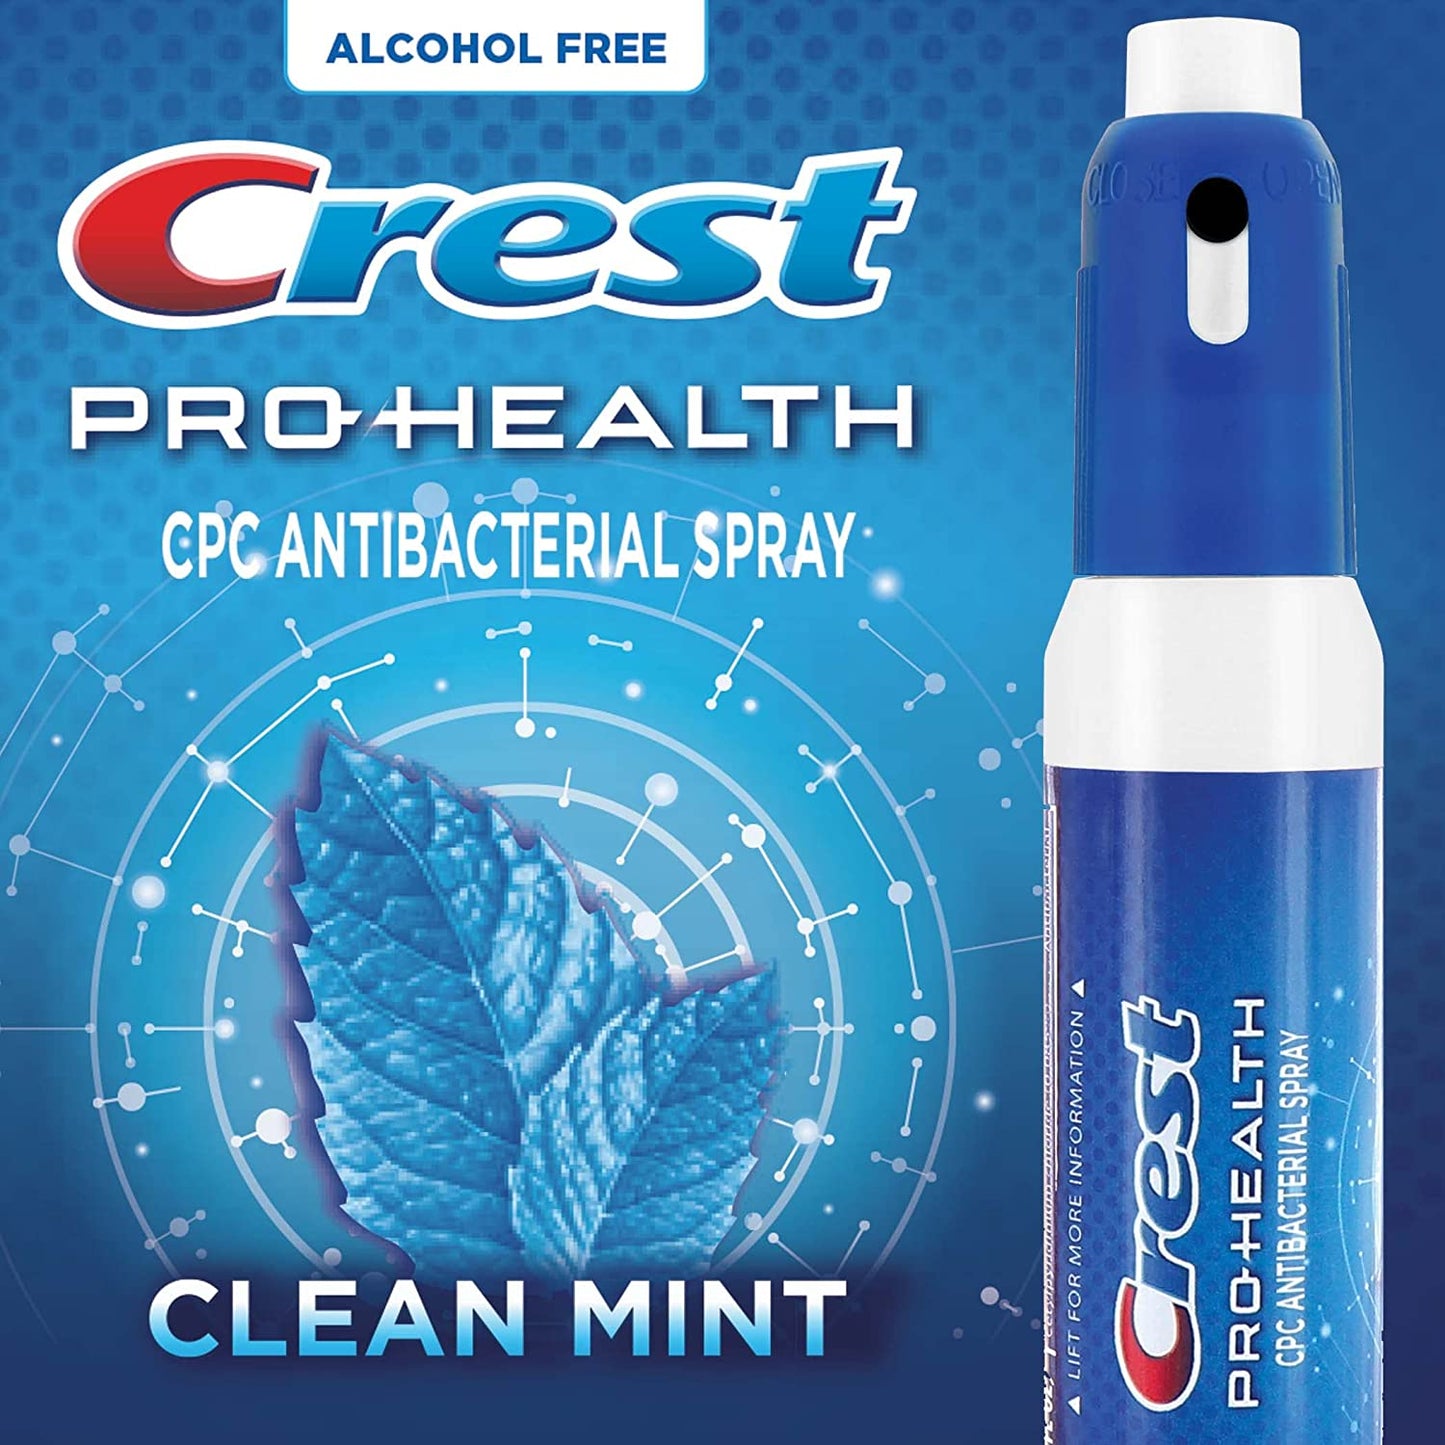 Crest Pro-Health CPC Antibacterial Spray Clean Mint Germ Kill Breath Mist 13 ml/ 0,04 fl oz